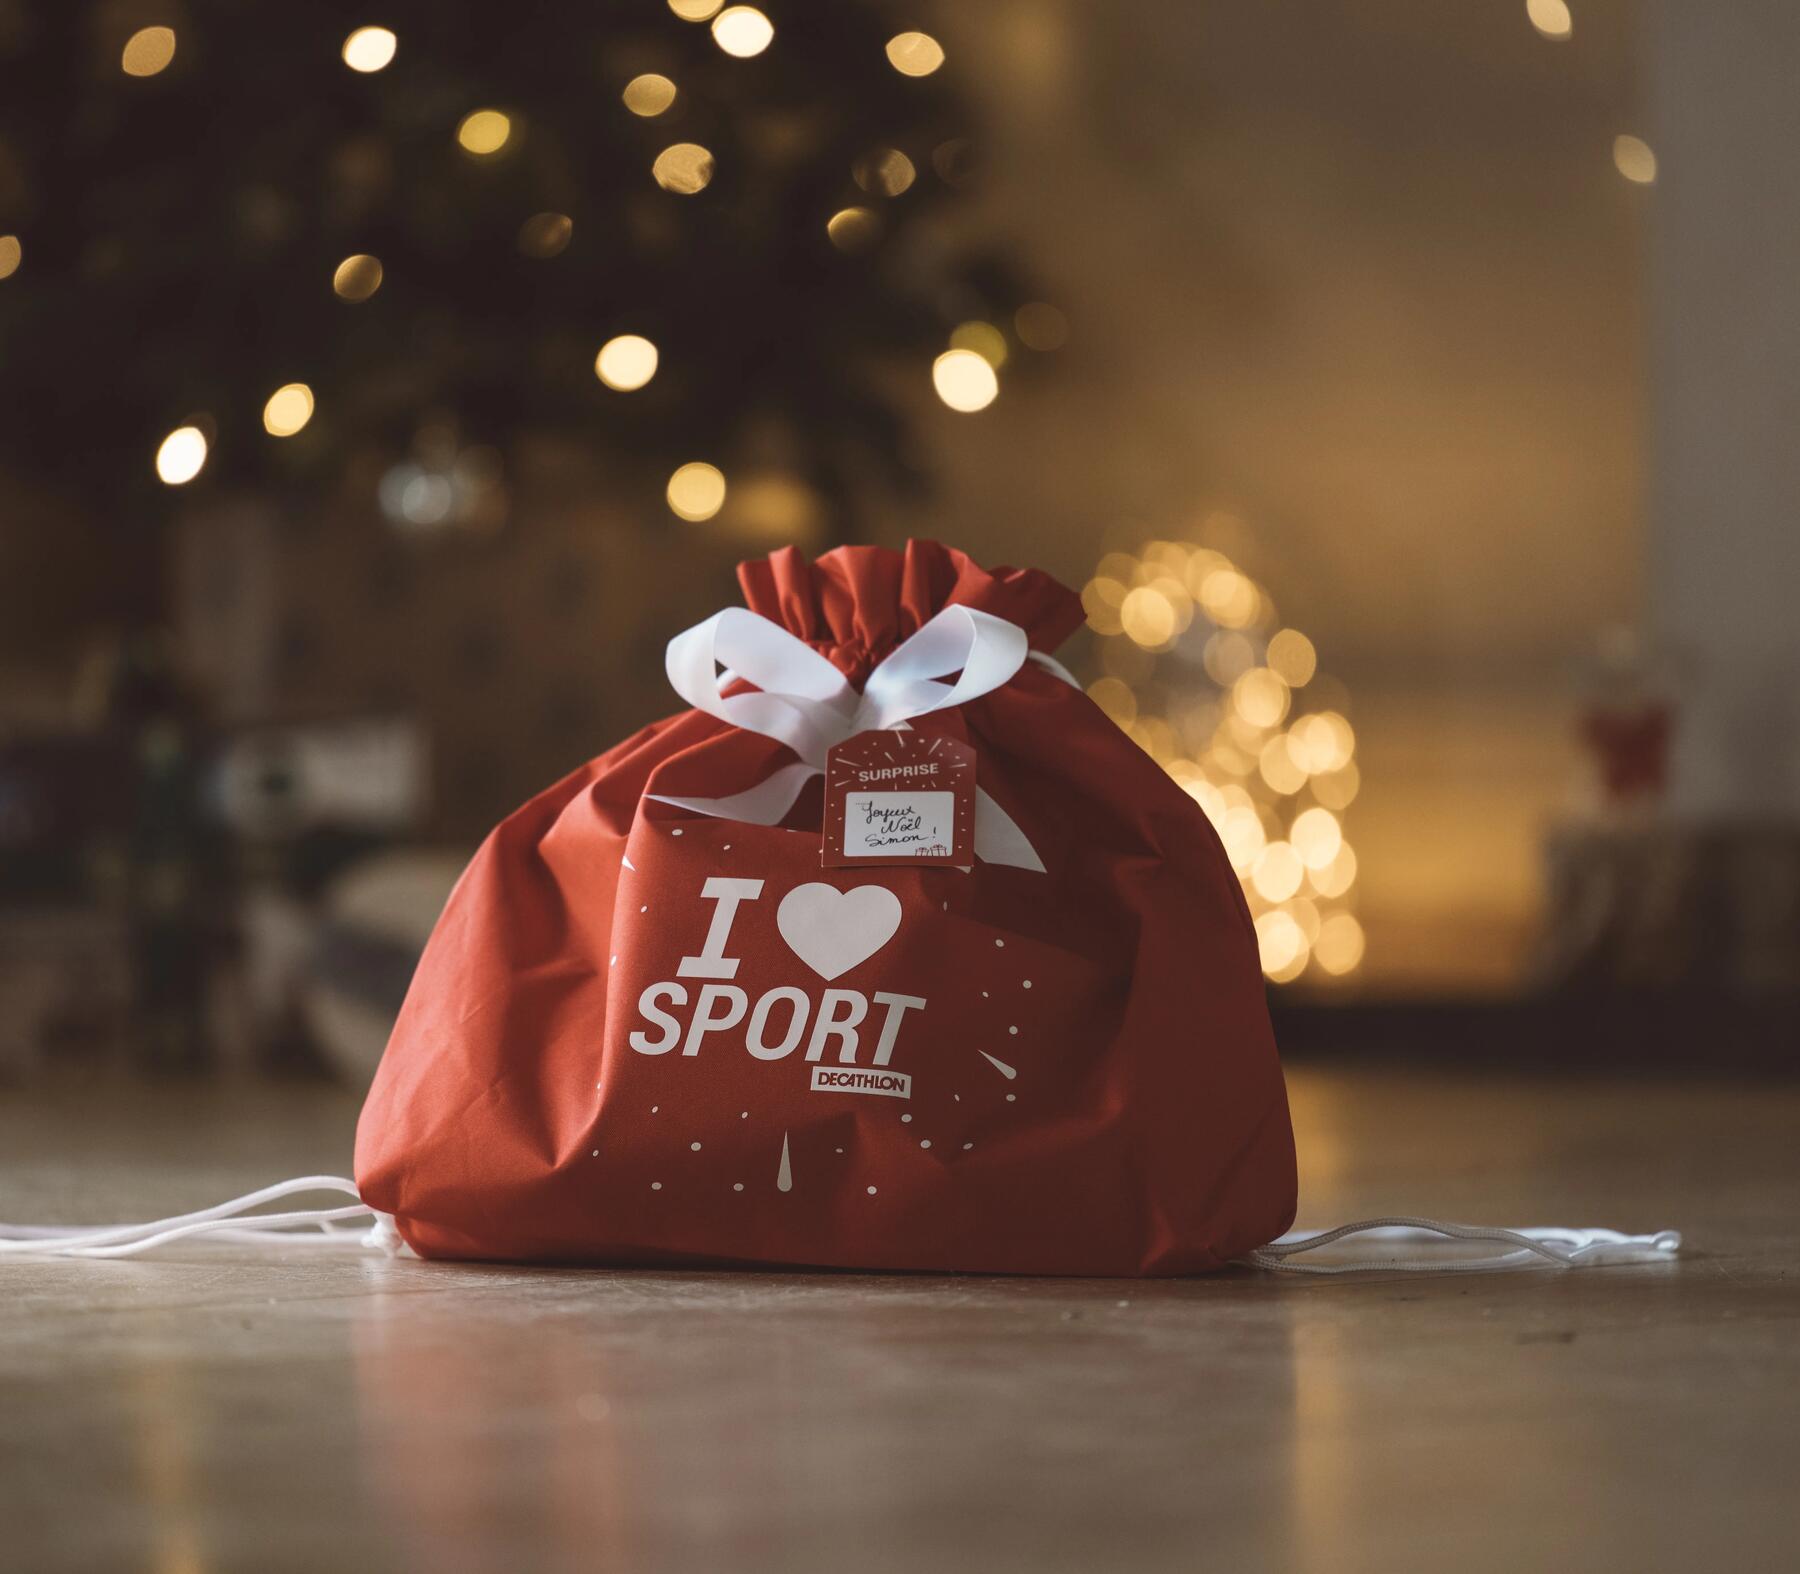 De voordelen van een cadeaubon als kerstcadeau